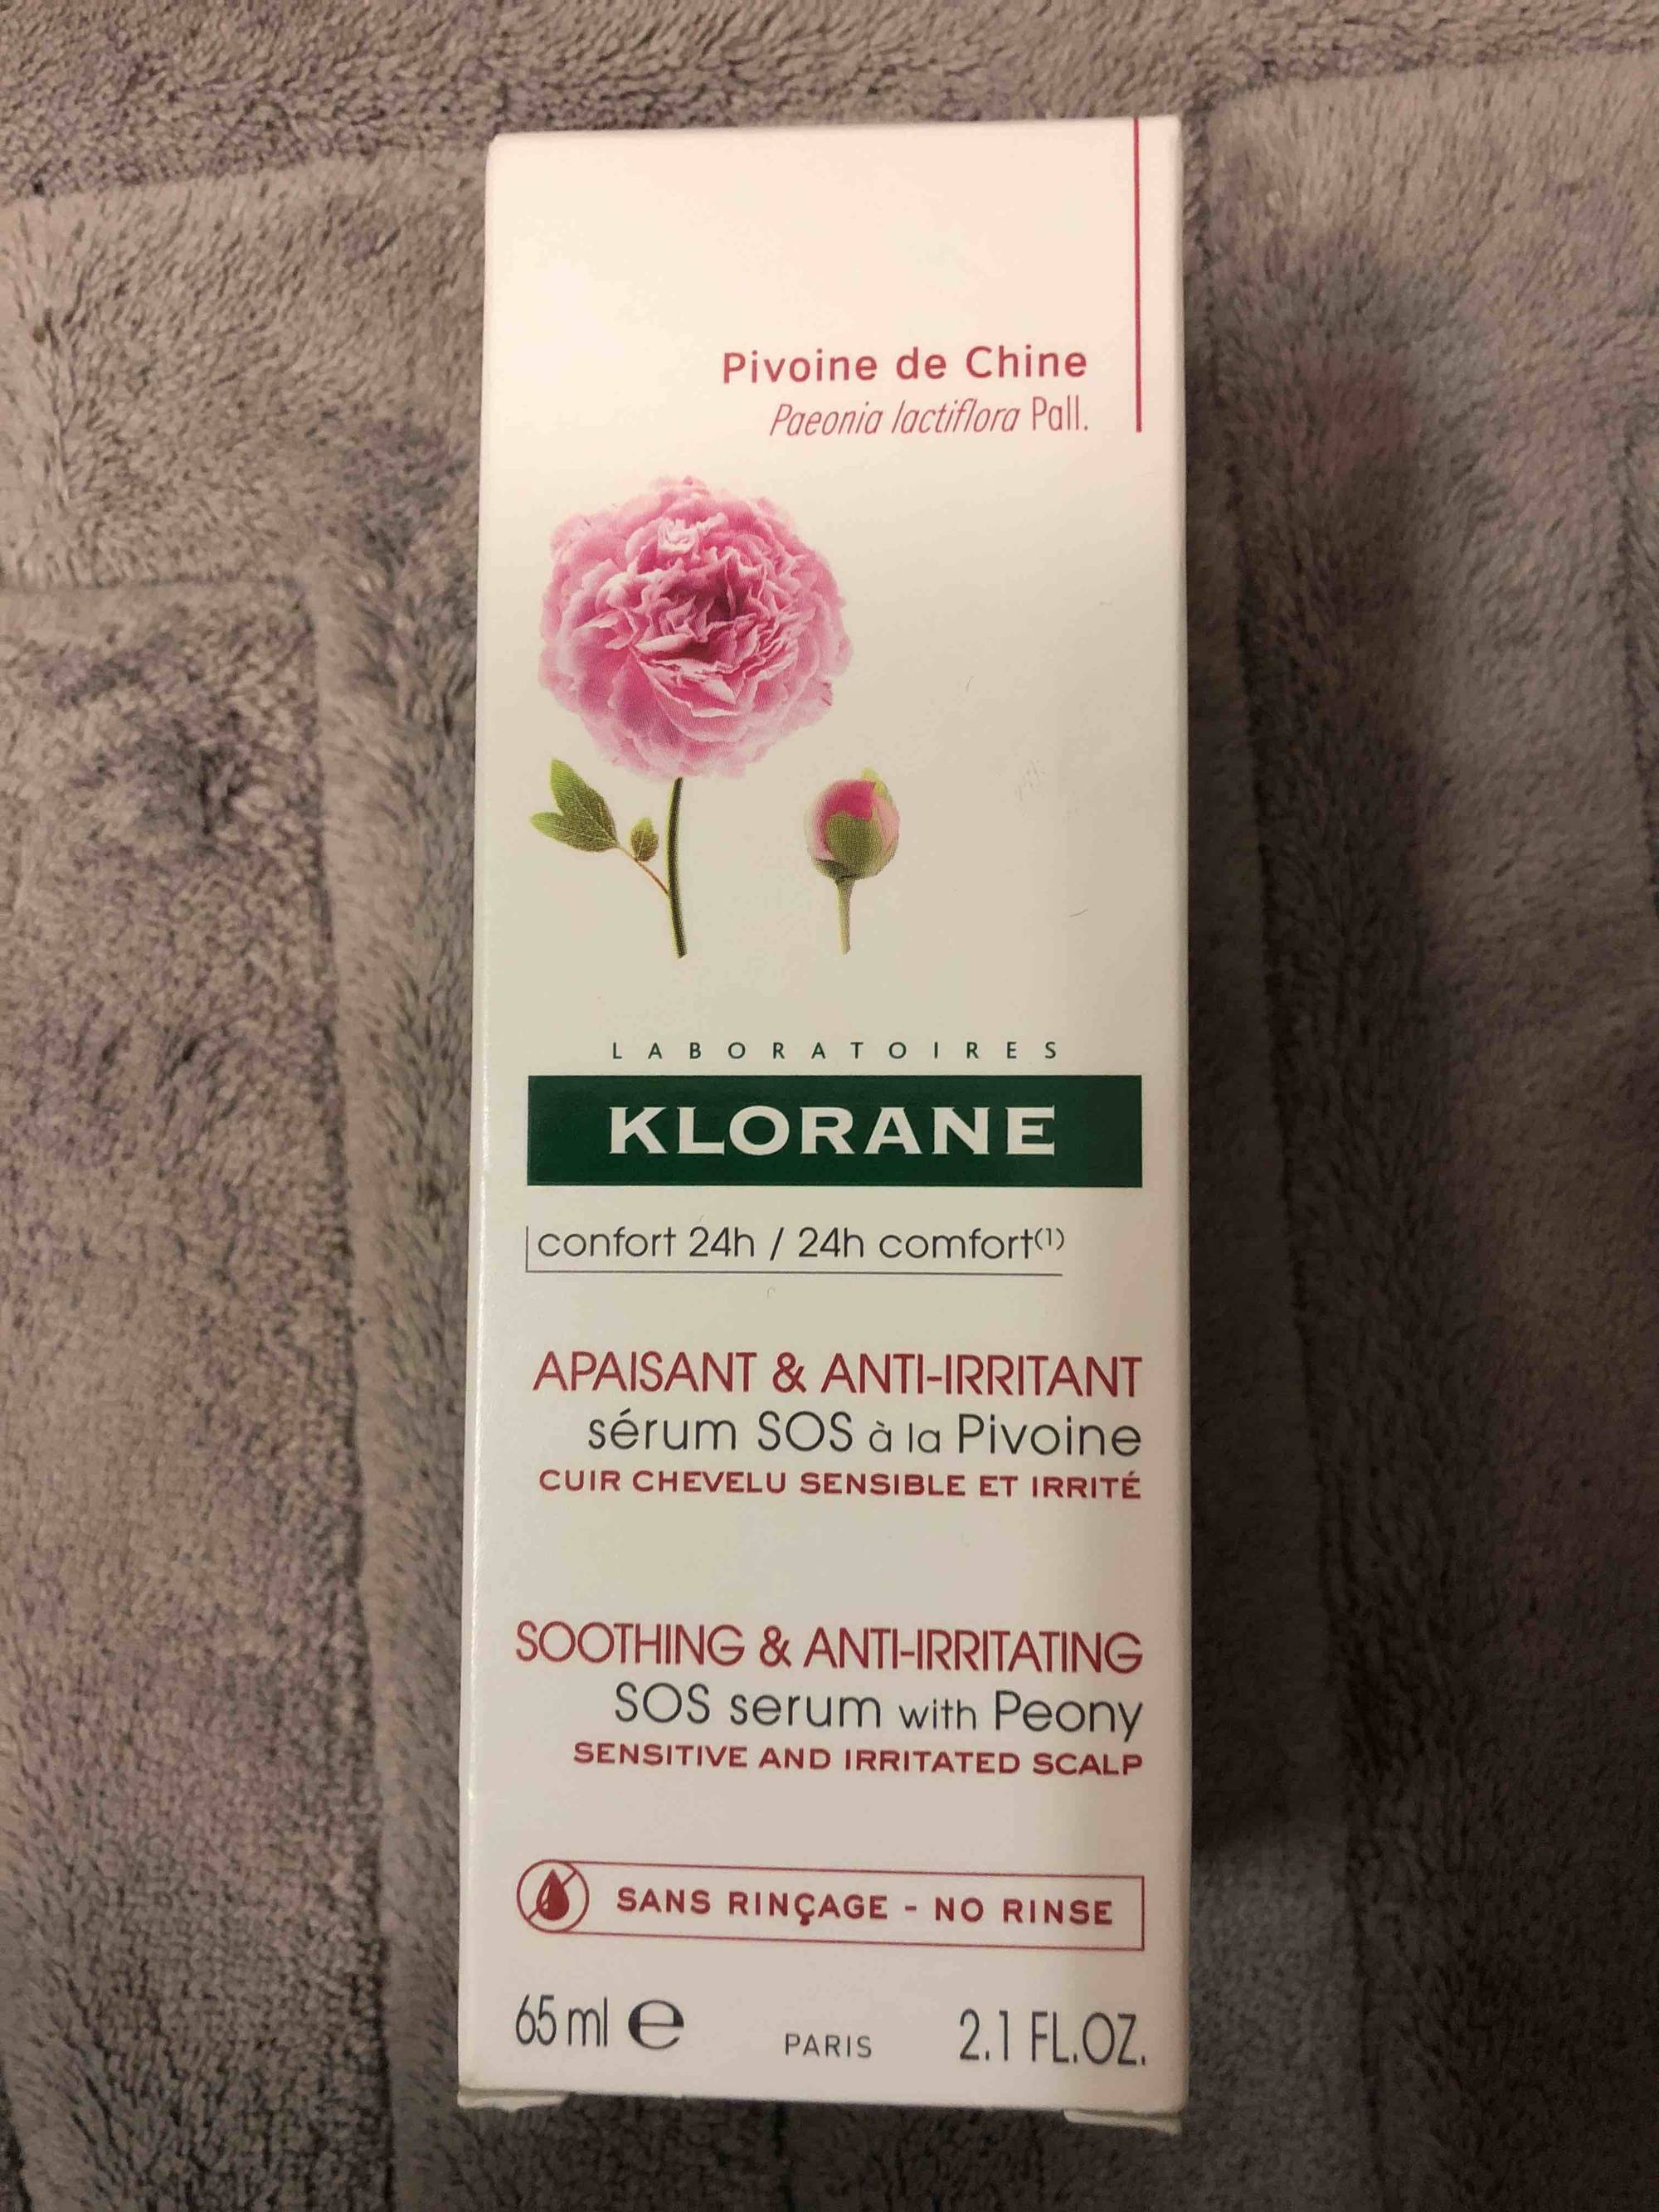 KLORANE - Pivoine de chine - Sérum SOS apaisant & anti-irritant